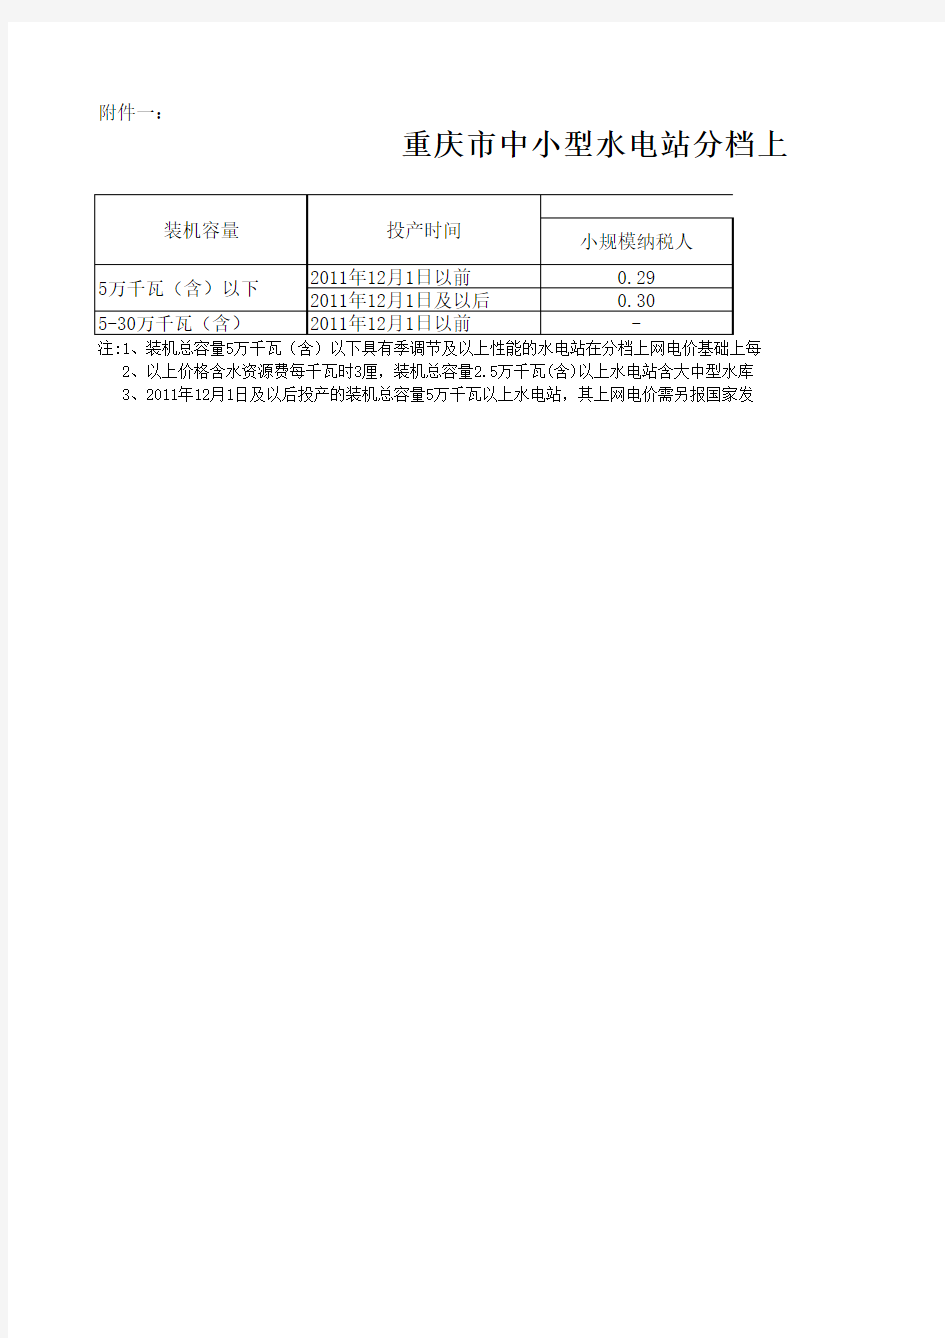 重庆市中小型水电站分档上网电价表